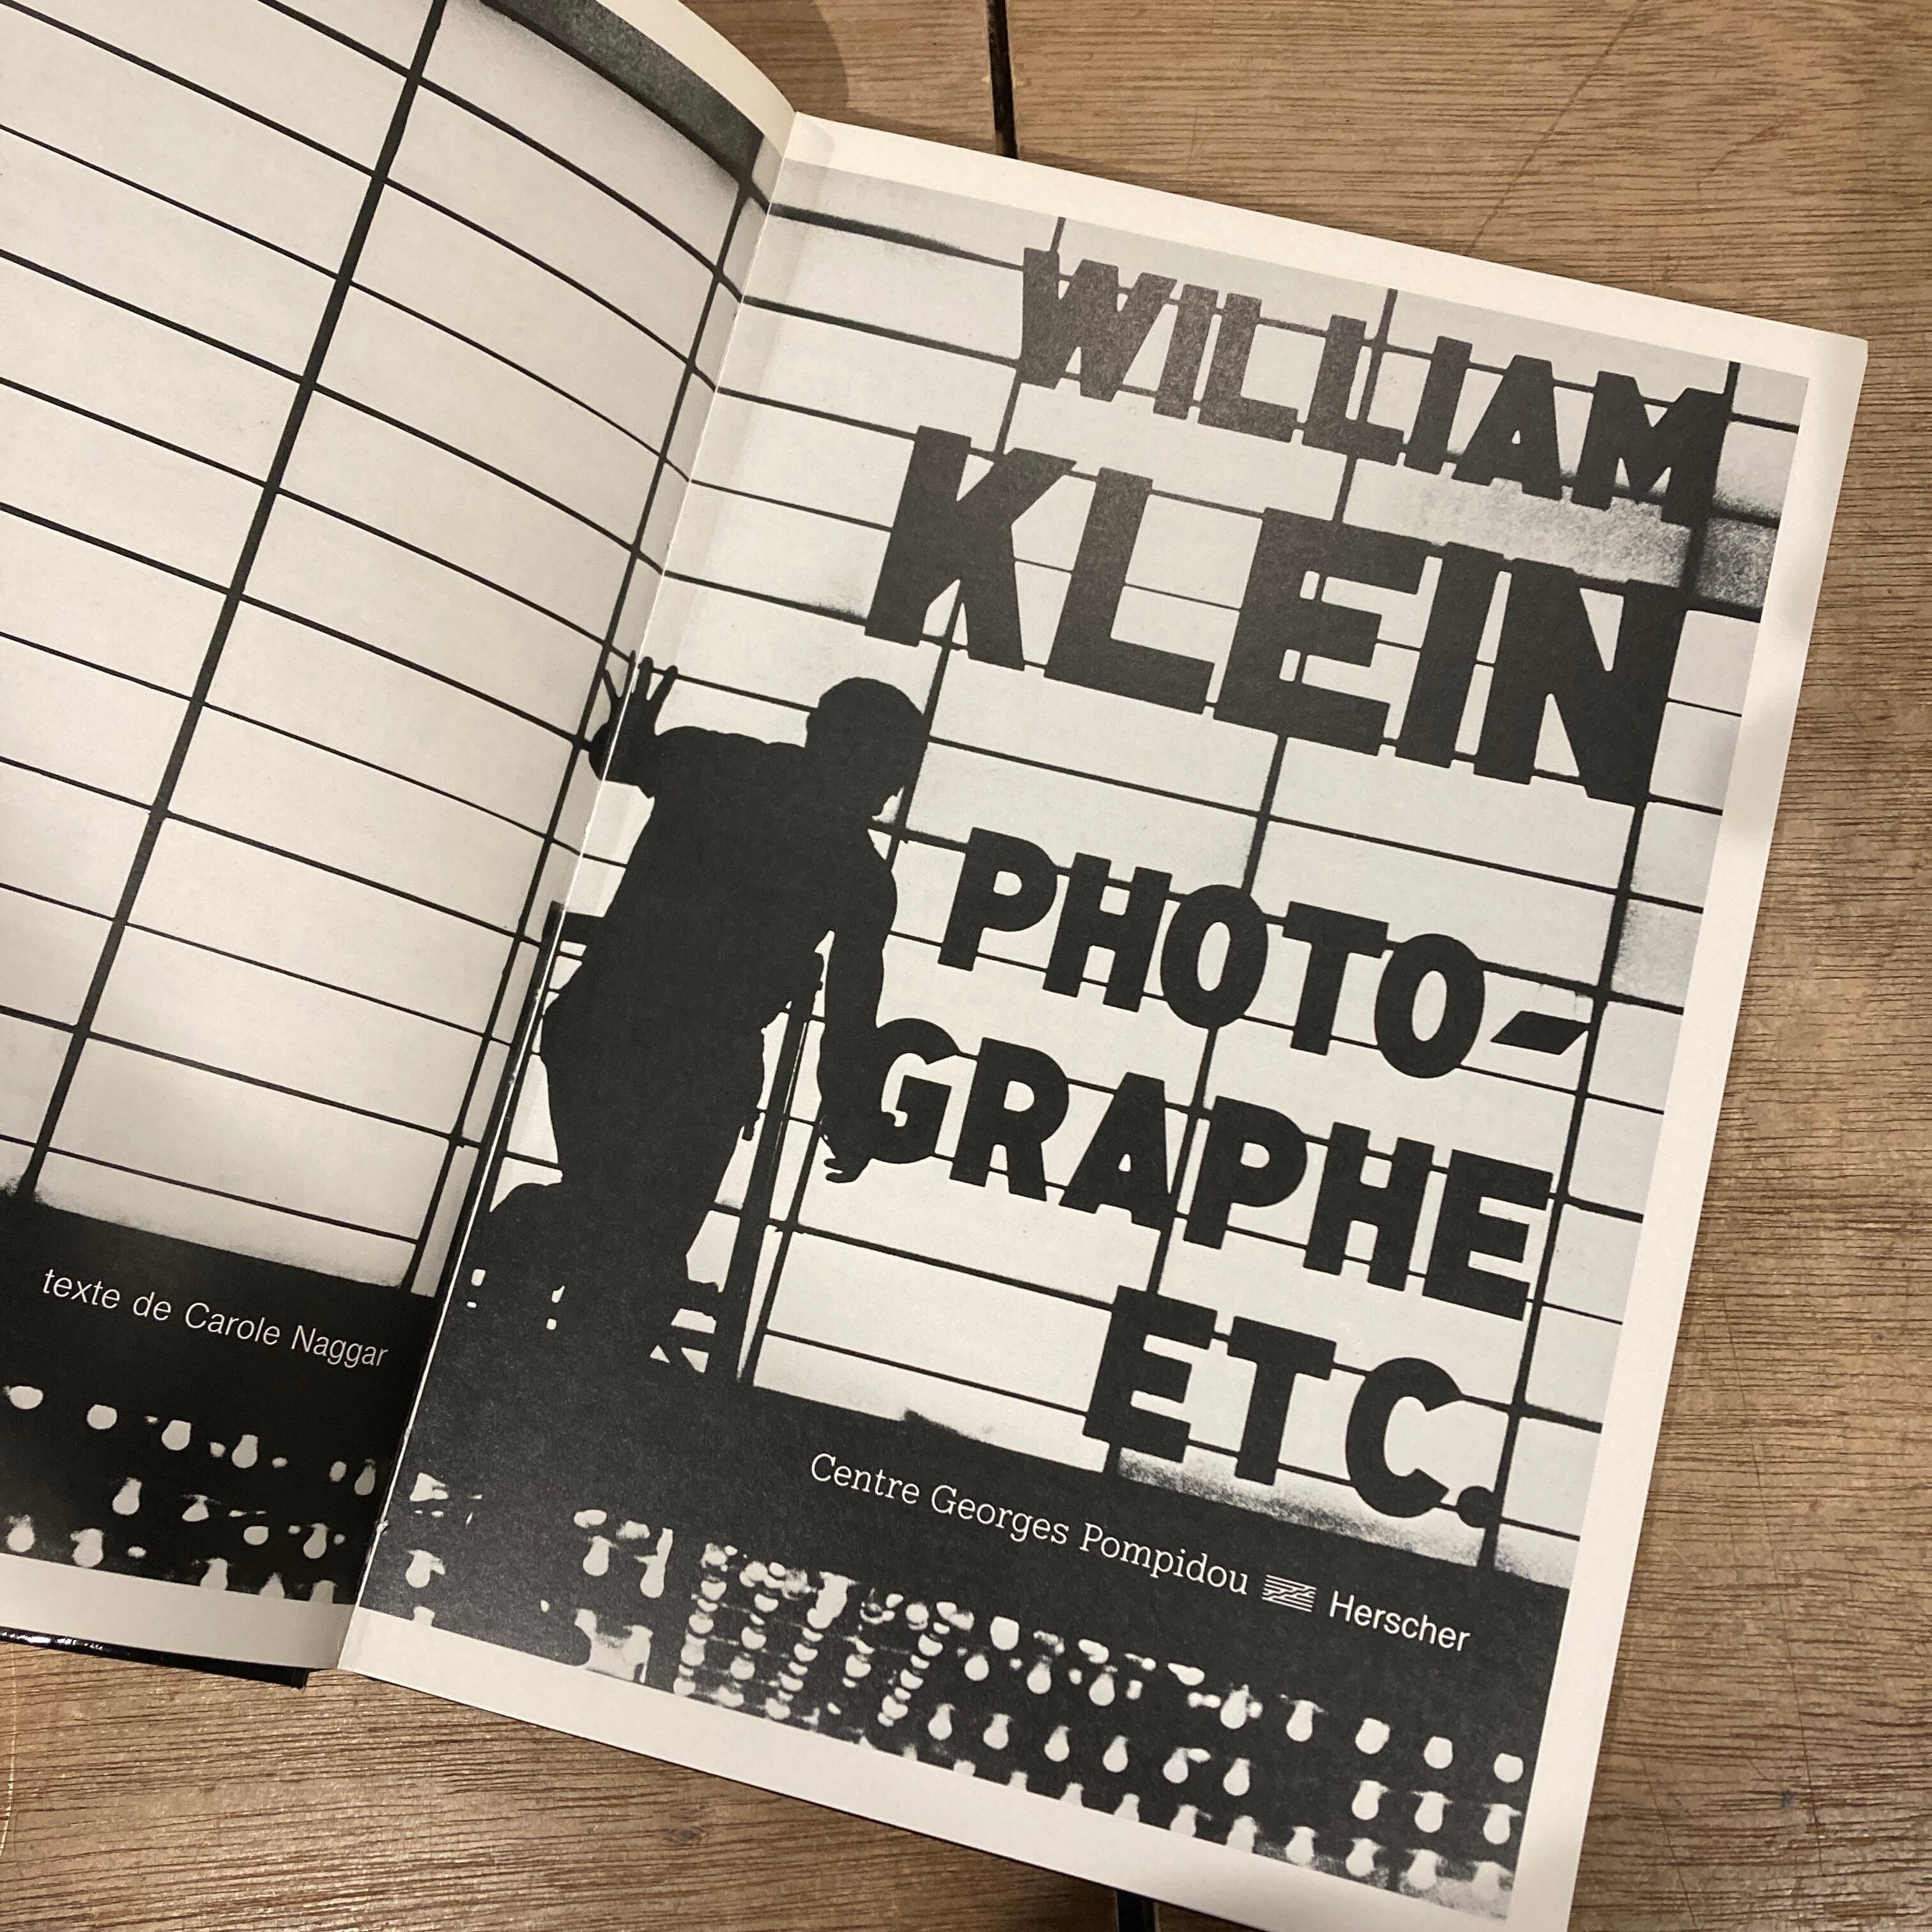 William Klein: Photographe etc. / ウィリアム・クライン | 百年